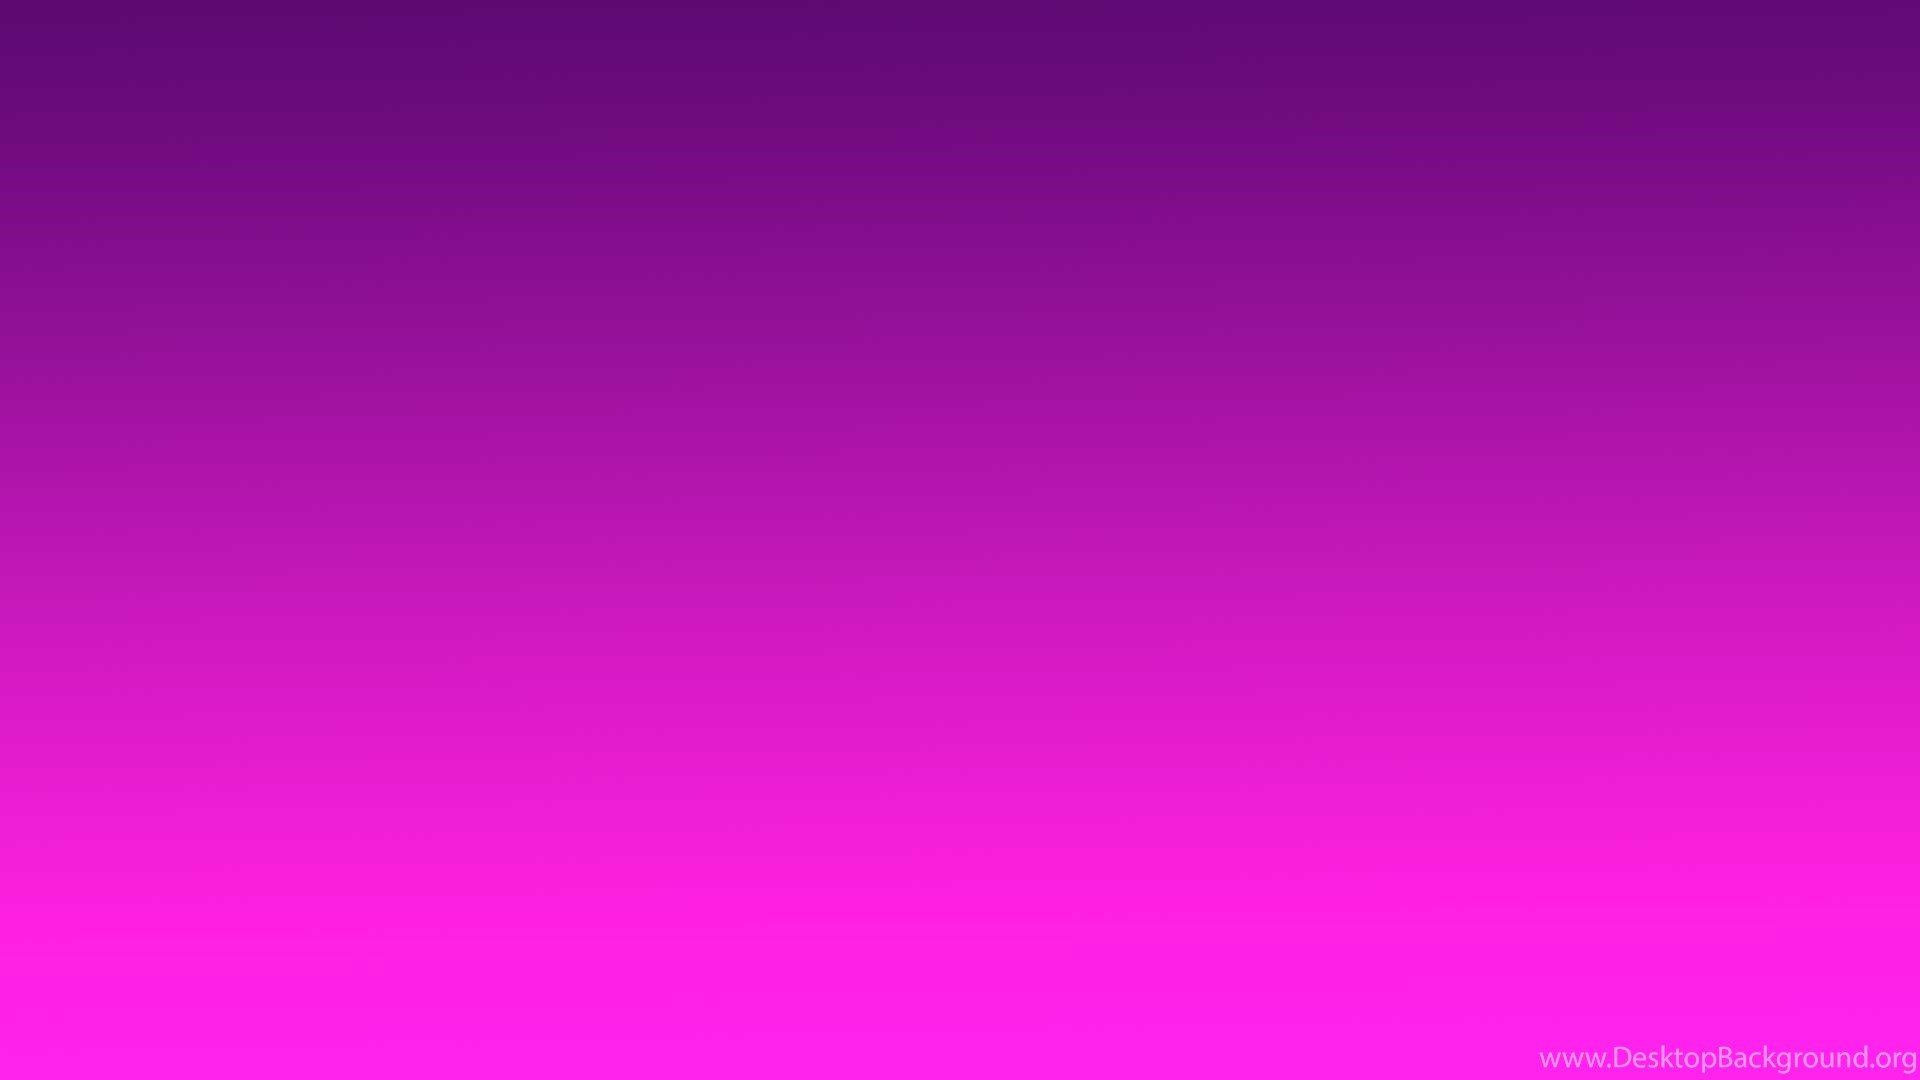 Pink And Purple Gradient Wallpaper 1143165 Desktop Background